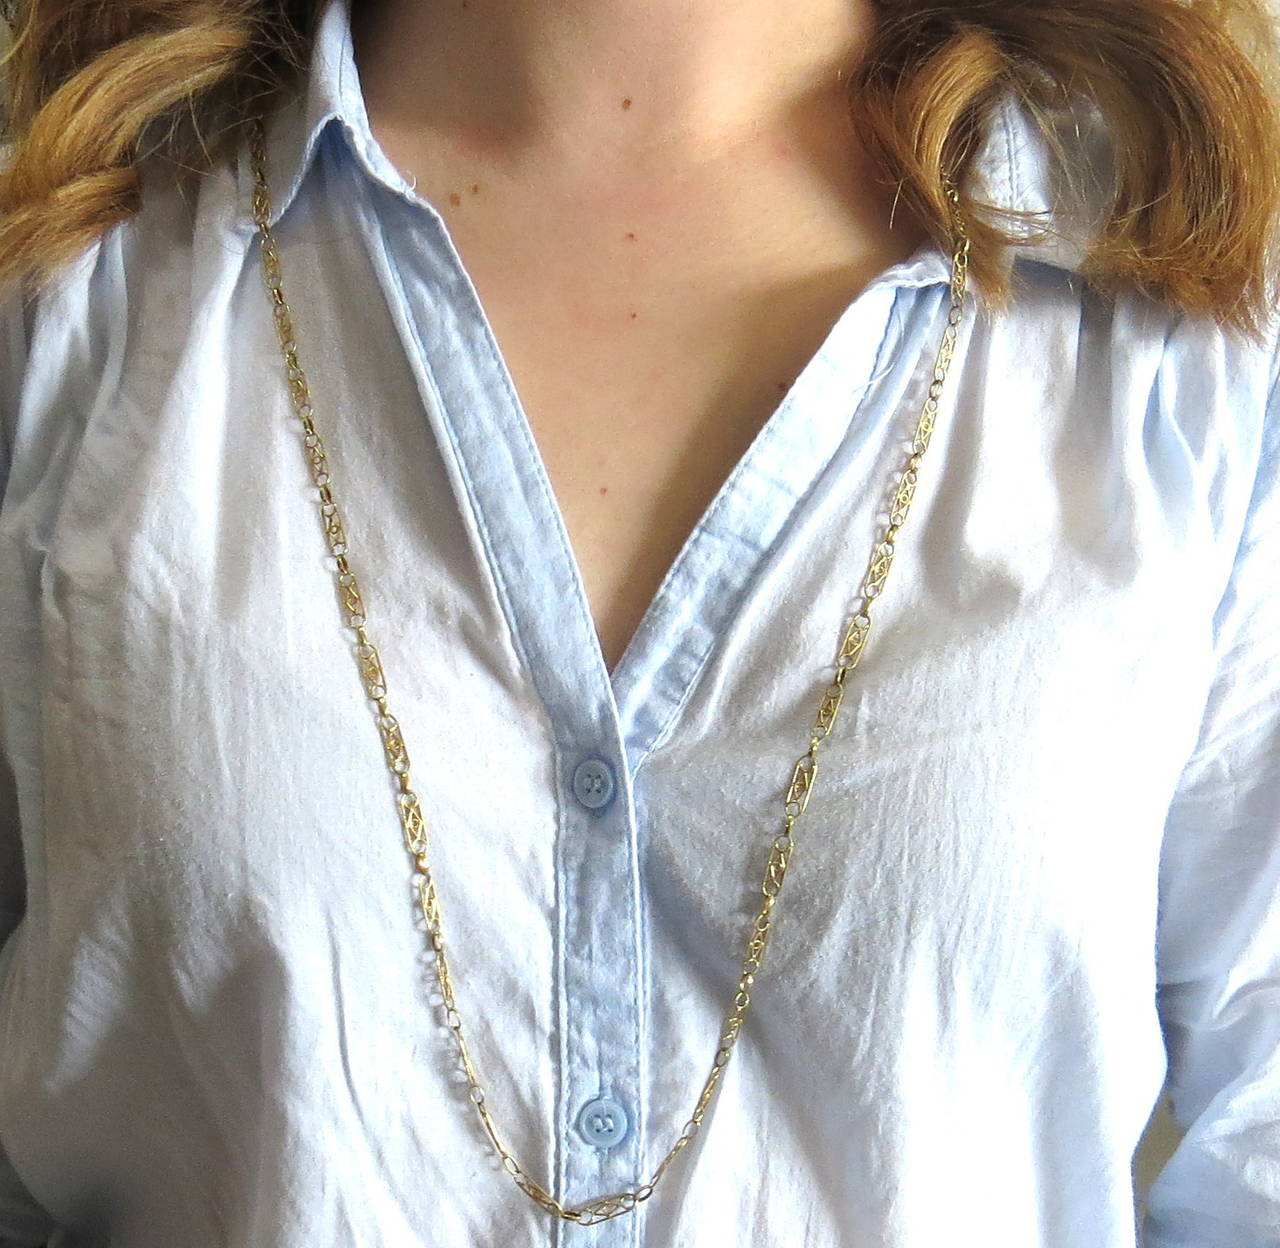 Antique 18k gold link necklace, measuring 37